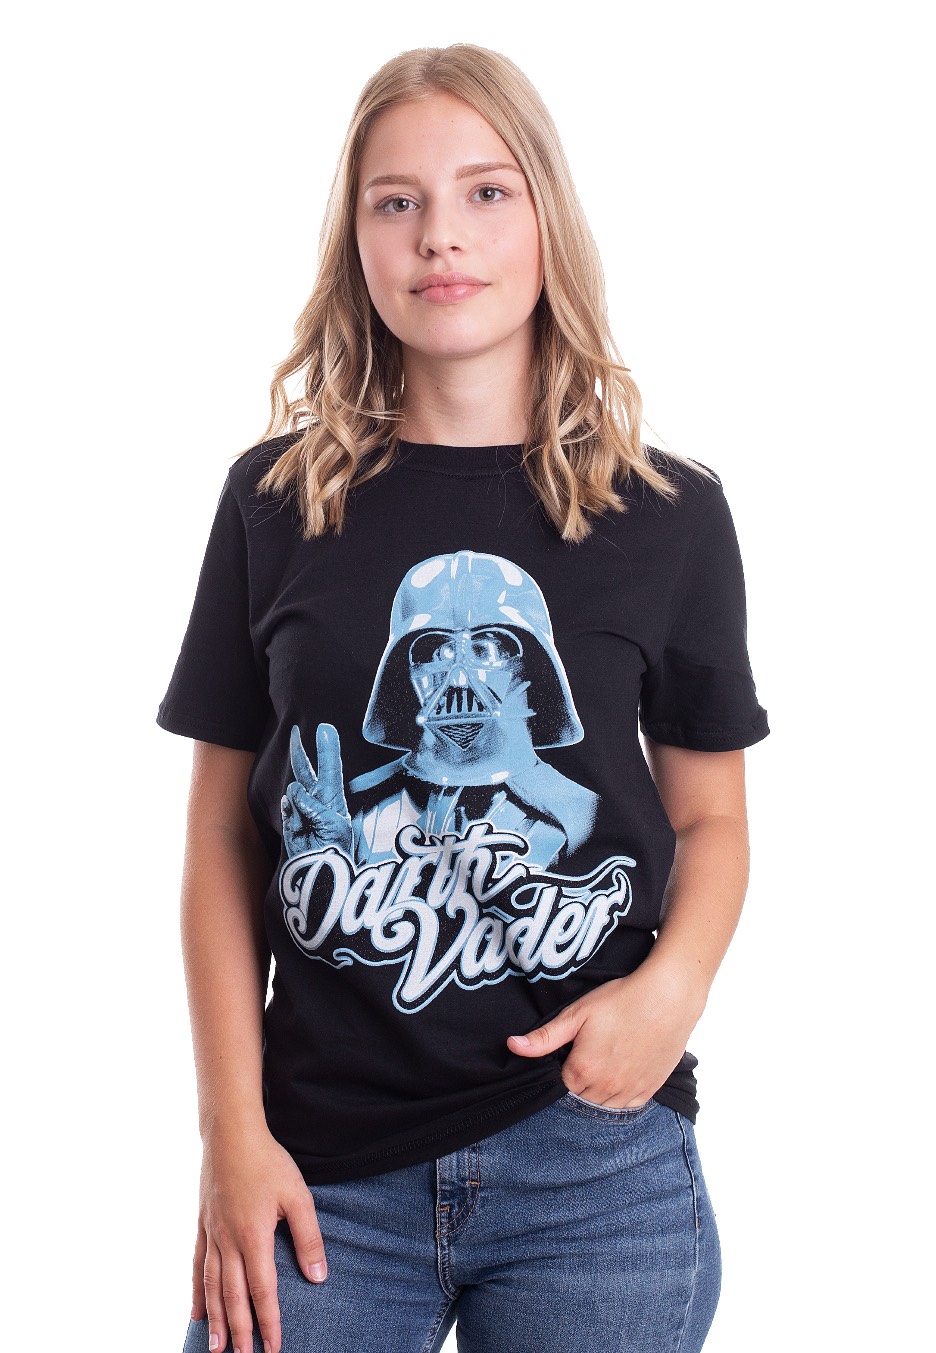 Star Wars - Cool Vader - - T-Shirts